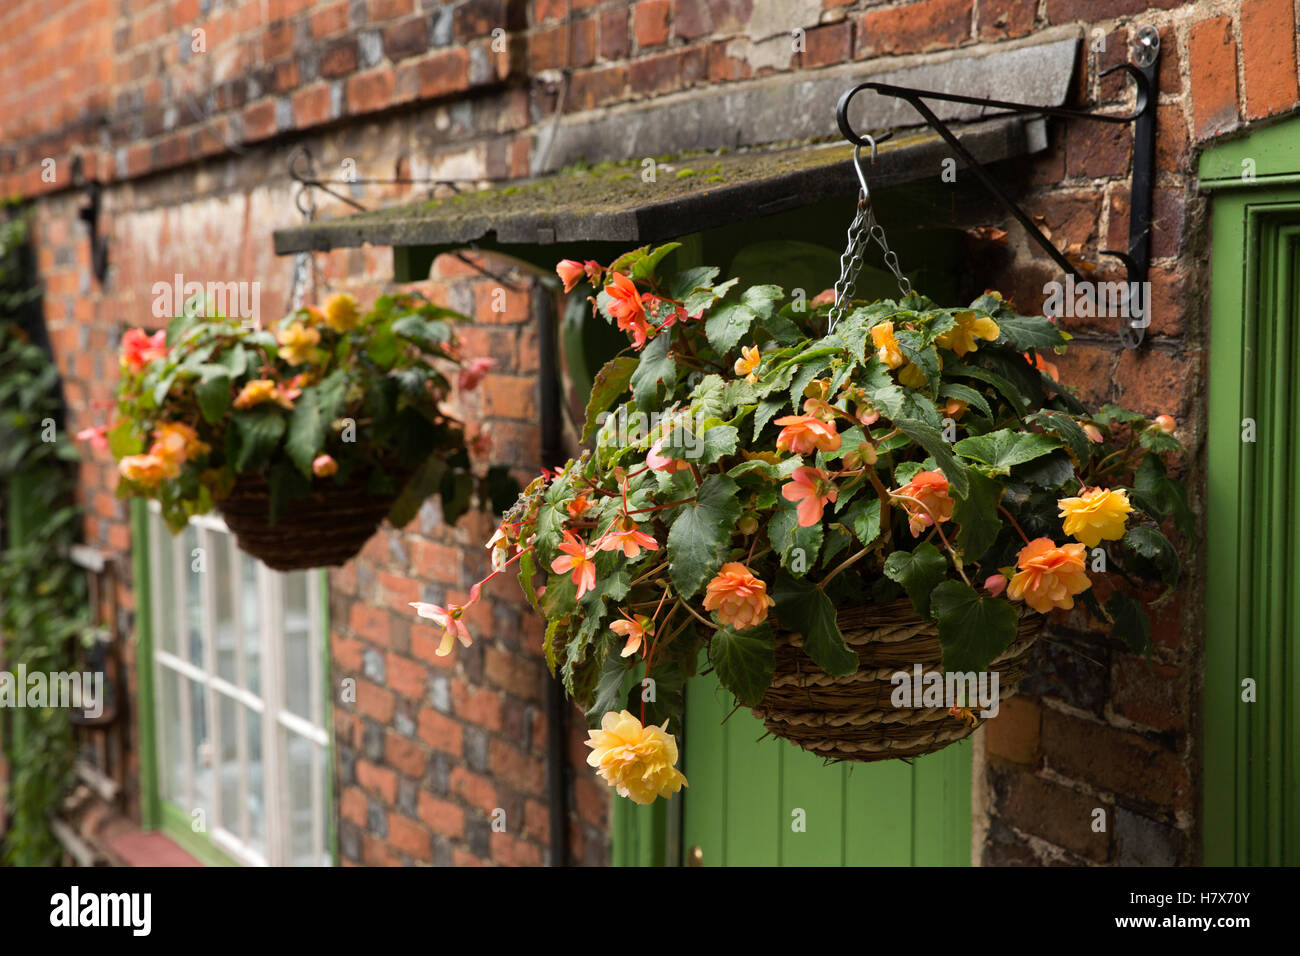 Großbritannien, England, Buckinghamshire, West Wycombe, Church Lane, Begonie Blumen im herbstlichen Blumen Blumenampeln vor Haustür Stockfoto